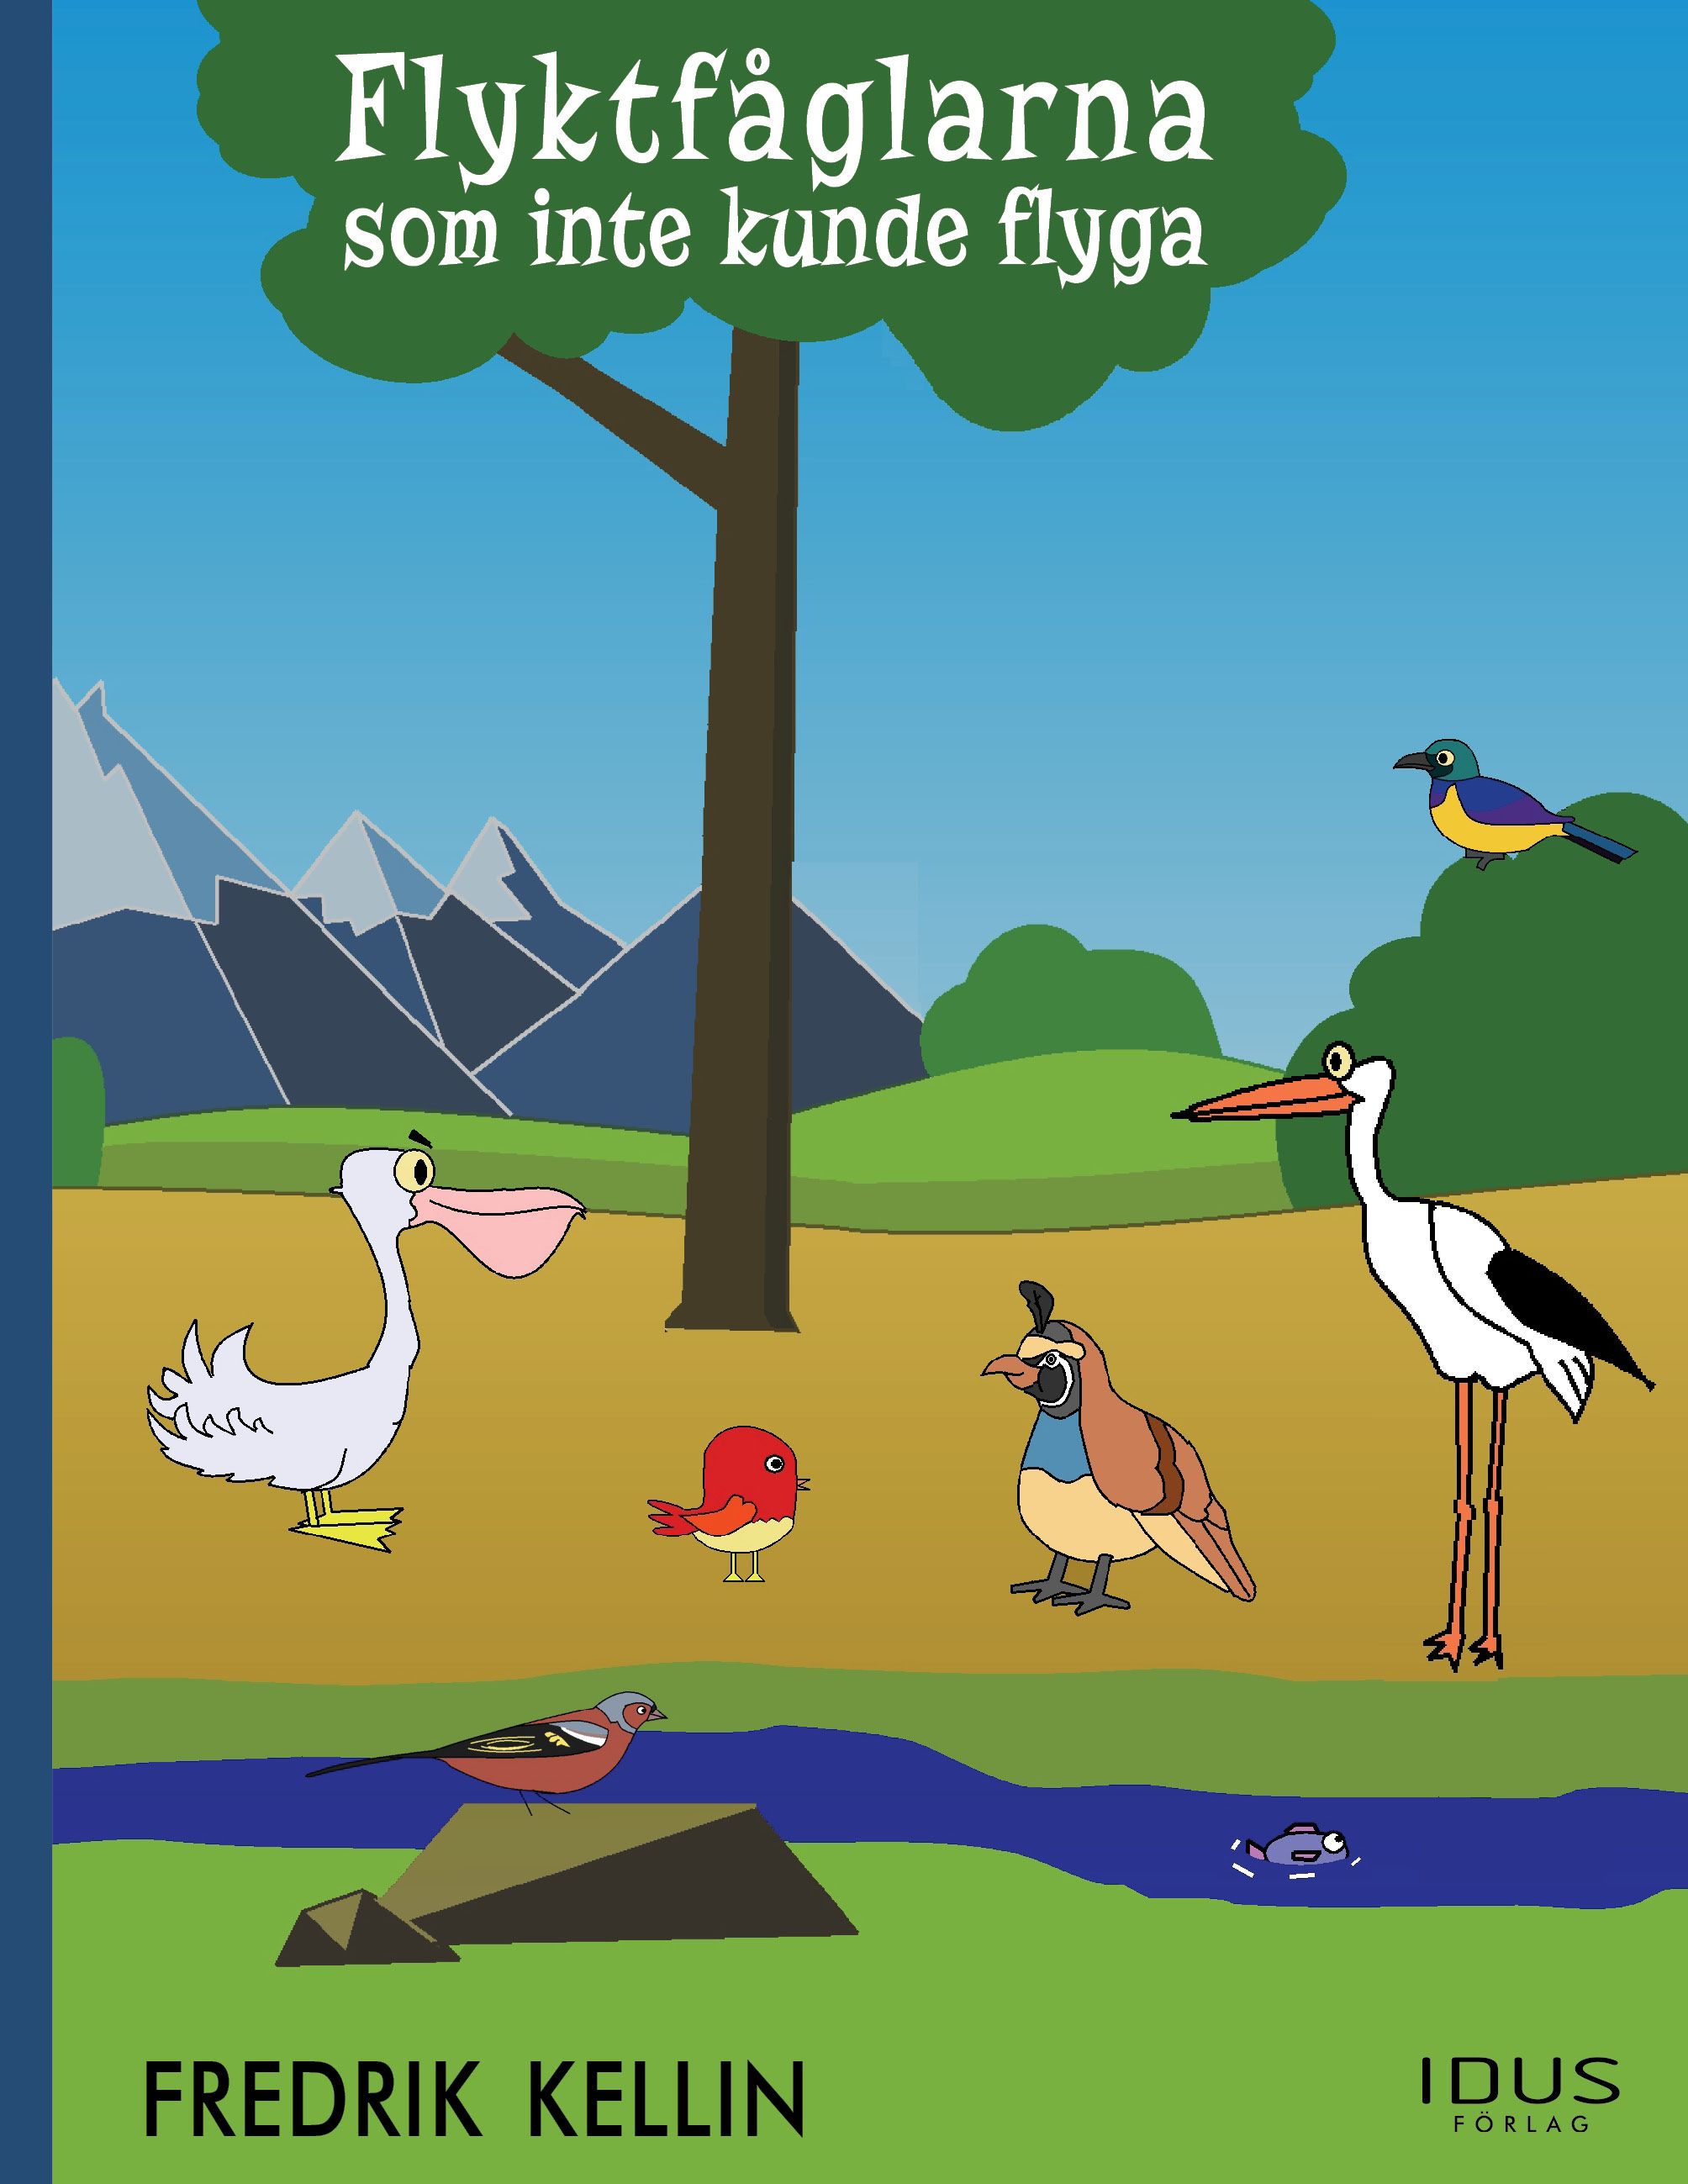 Flyktfåglarna som inte kunde flyga, e-bok av Fredrik Kellin